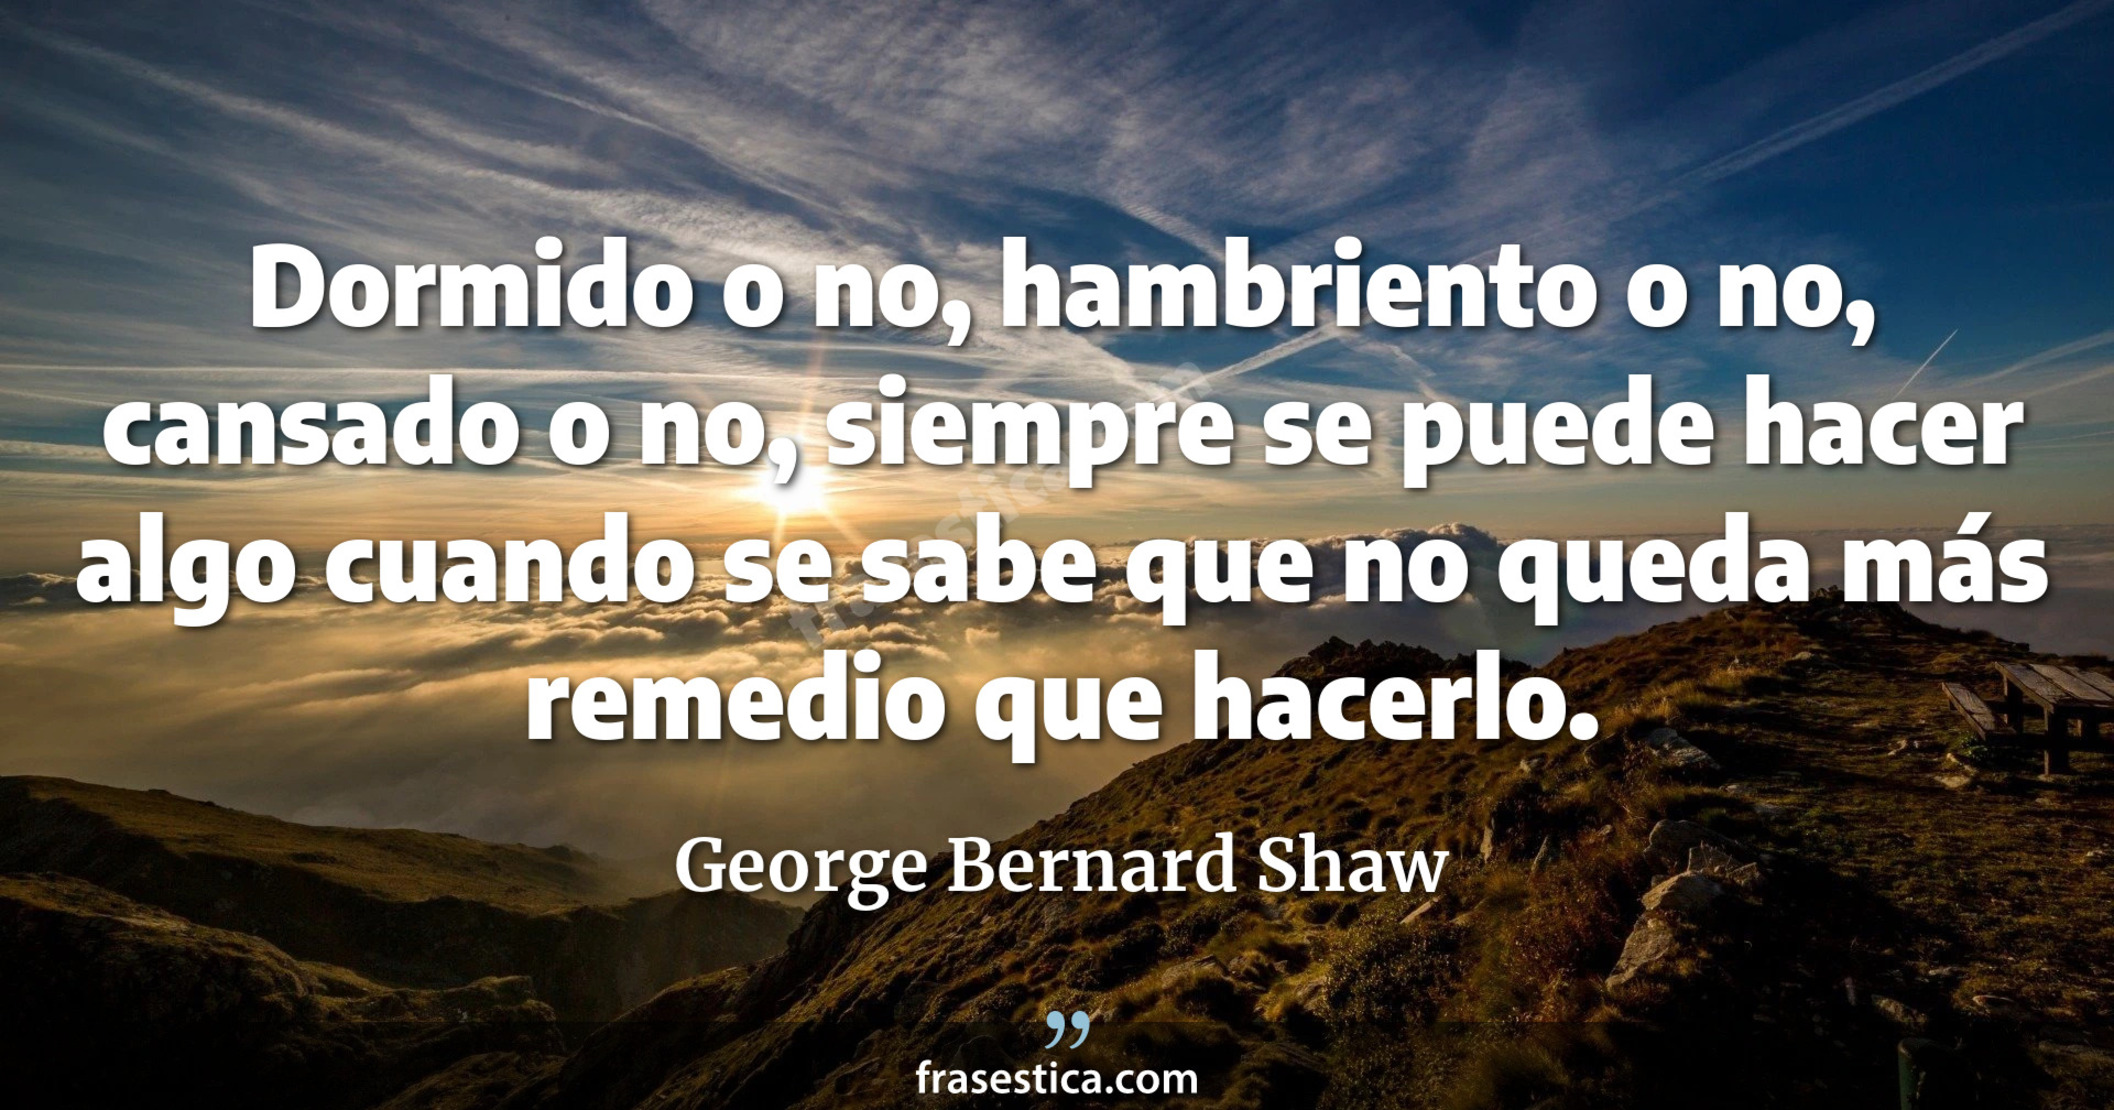 Dormido o no, hambriento o no, cansado o no, siempre se puede hacer algo cuando se sabe que no queda más remedio que hacerlo. - George Bernard Shaw